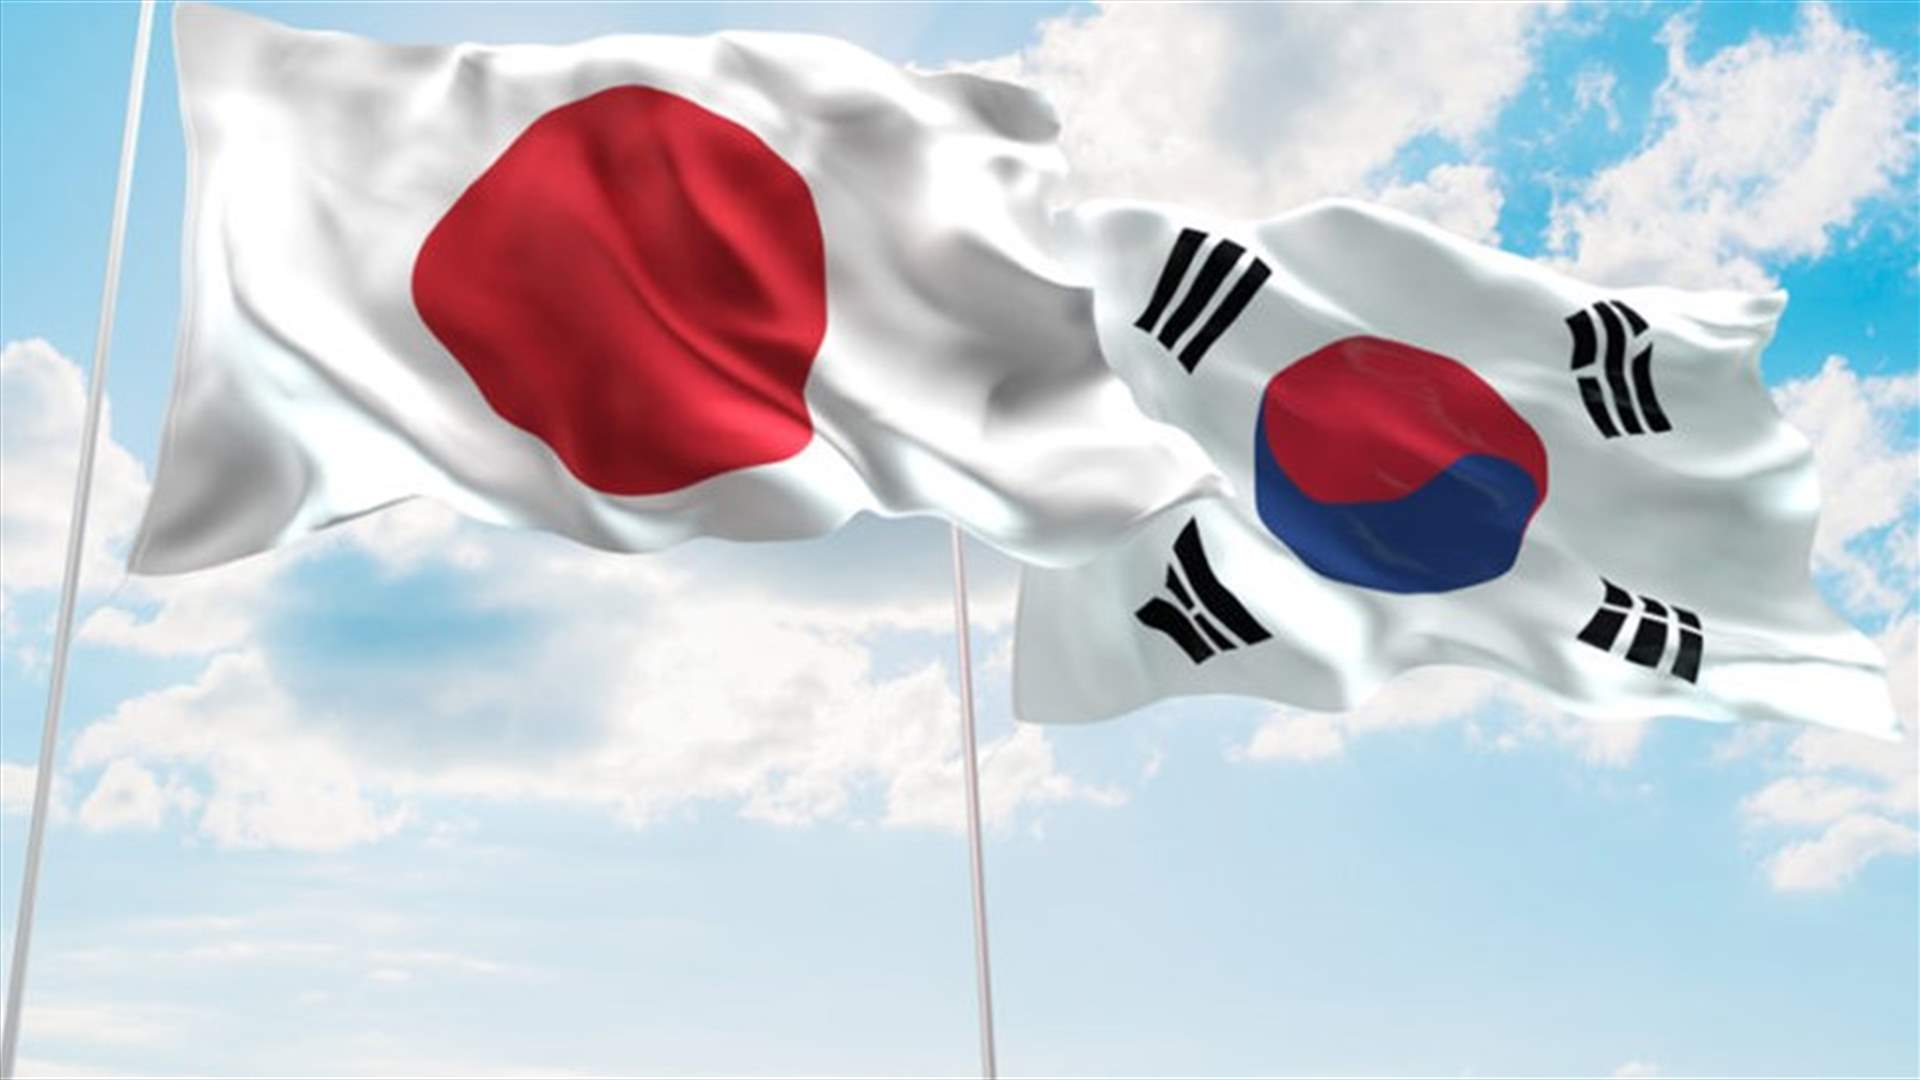 وزير دفاع اليابان يأسف لقرار كوريا الجنوبية إنهاء اتفاقية تبادل المعلومات المخابراتية